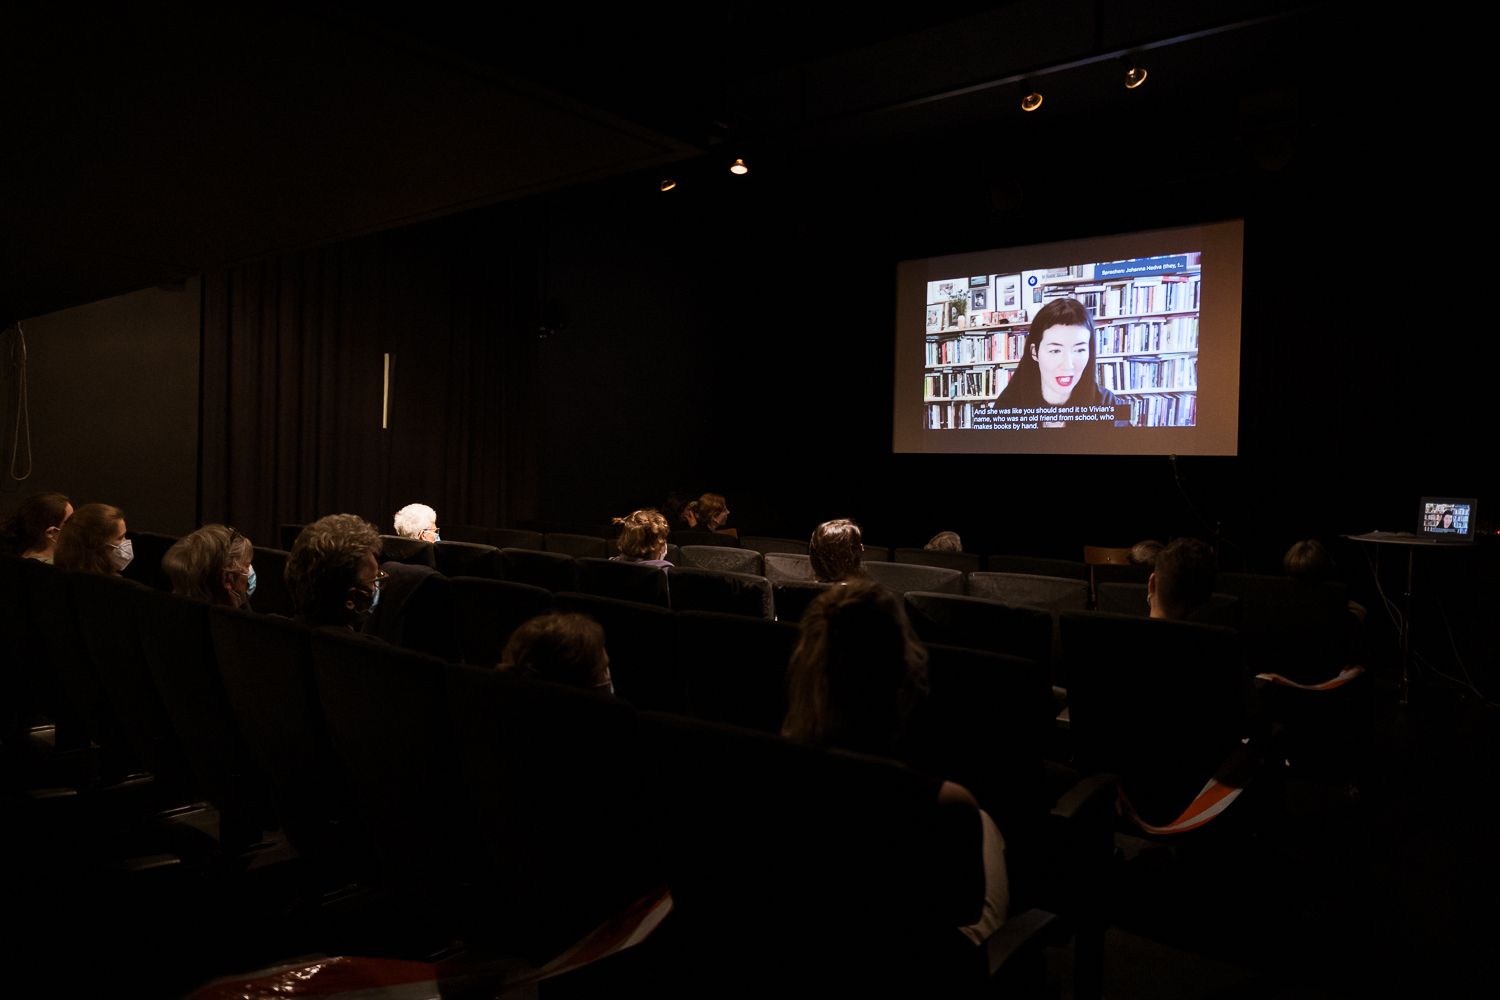 Johanna Hedva (Screen) während ihrer Lesung MINERVA UND DIE FEHLGEBURT DES GEHIRNS im Kommunalen Kino Freiburg.
Foto: Jennifer Rohrbacher